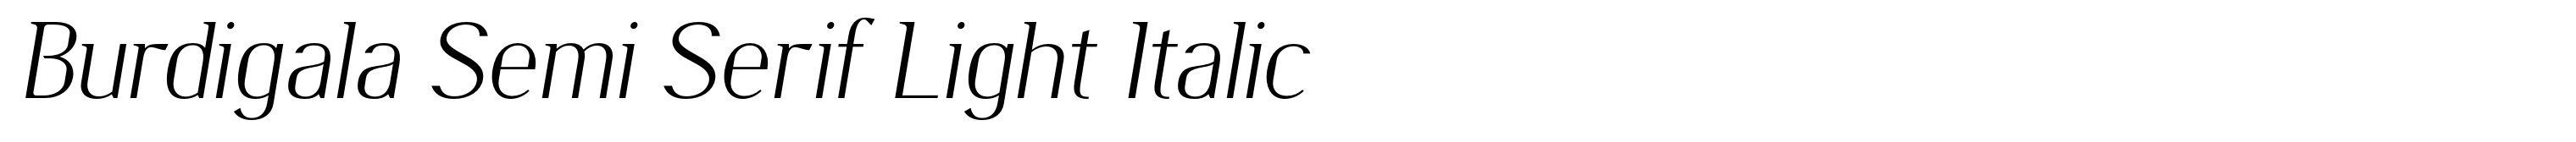 Burdigala Semi Serif Light Italic